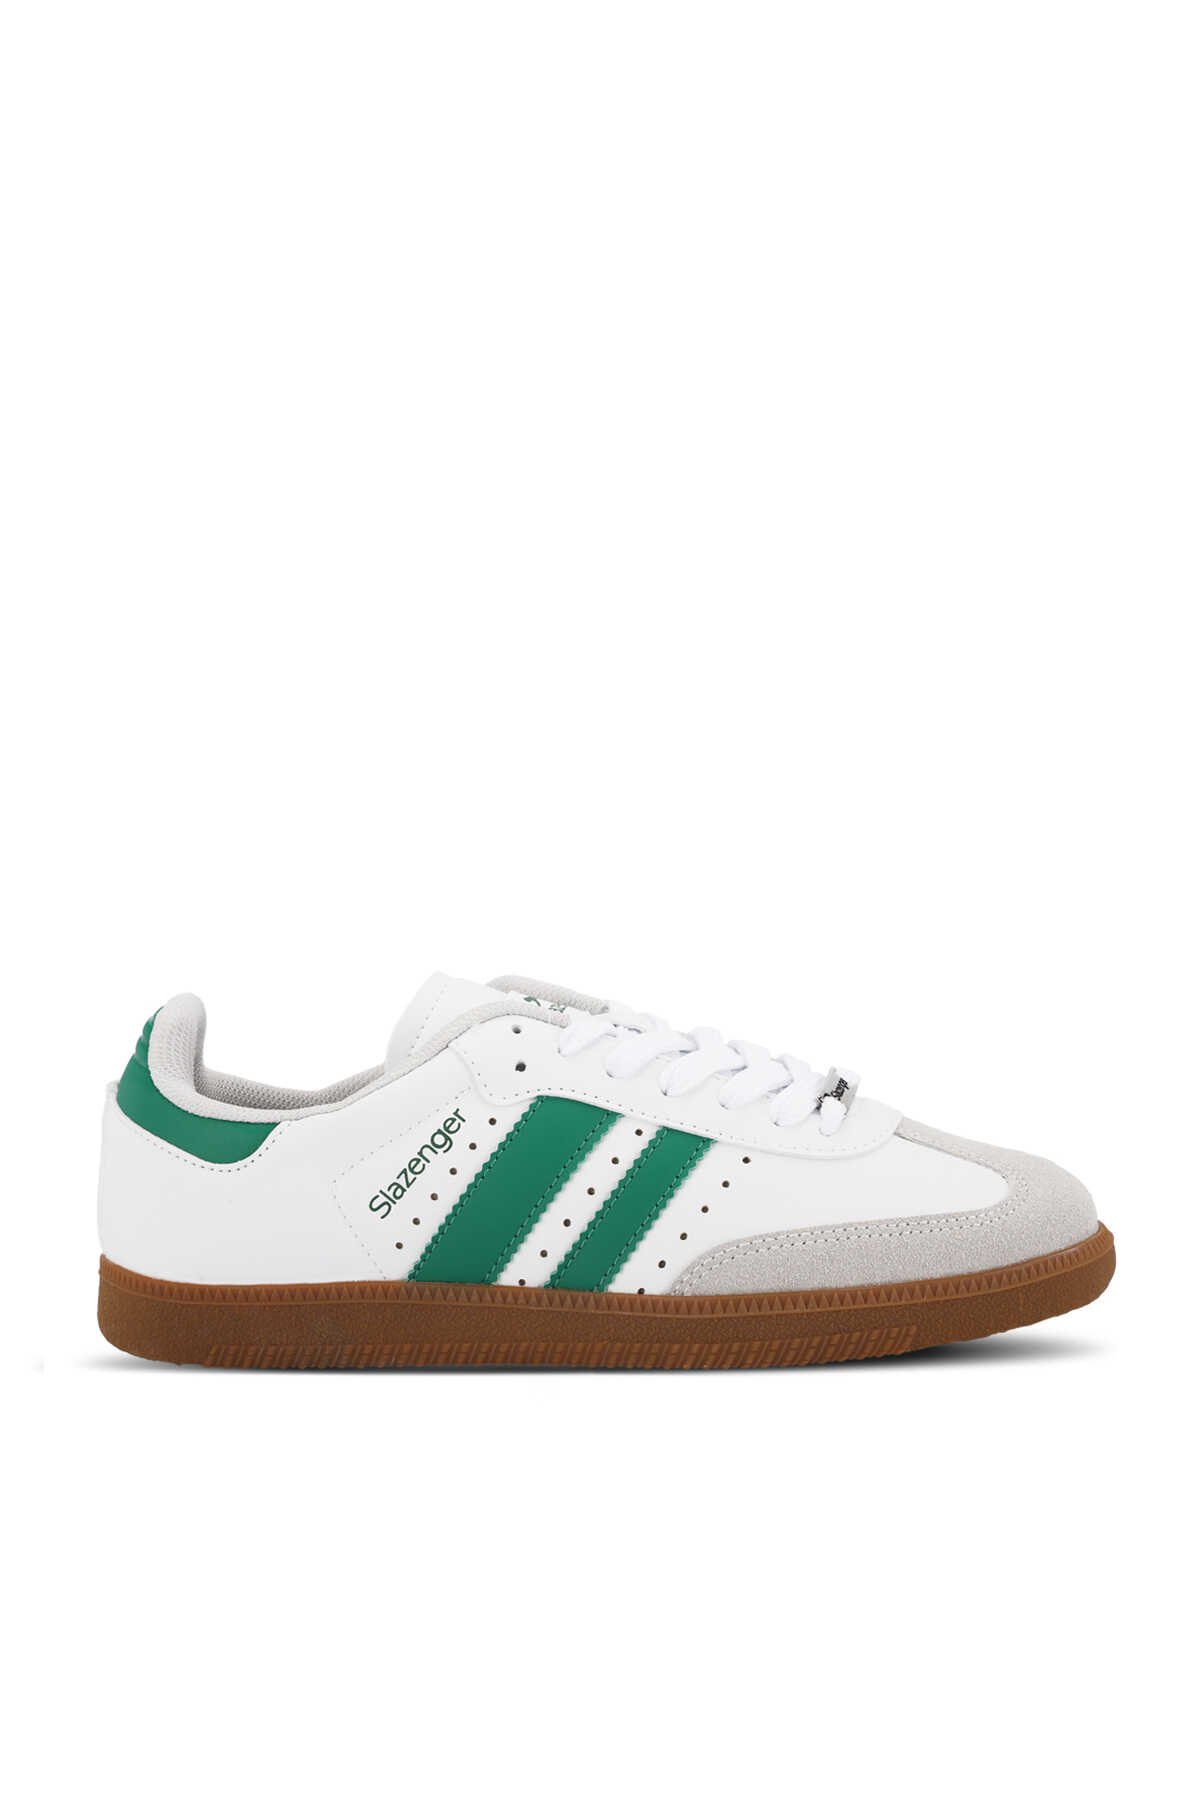 Slazenger - Slazenger PING Kadın Sneaker Ayakkabı Beyaz / Yeşil